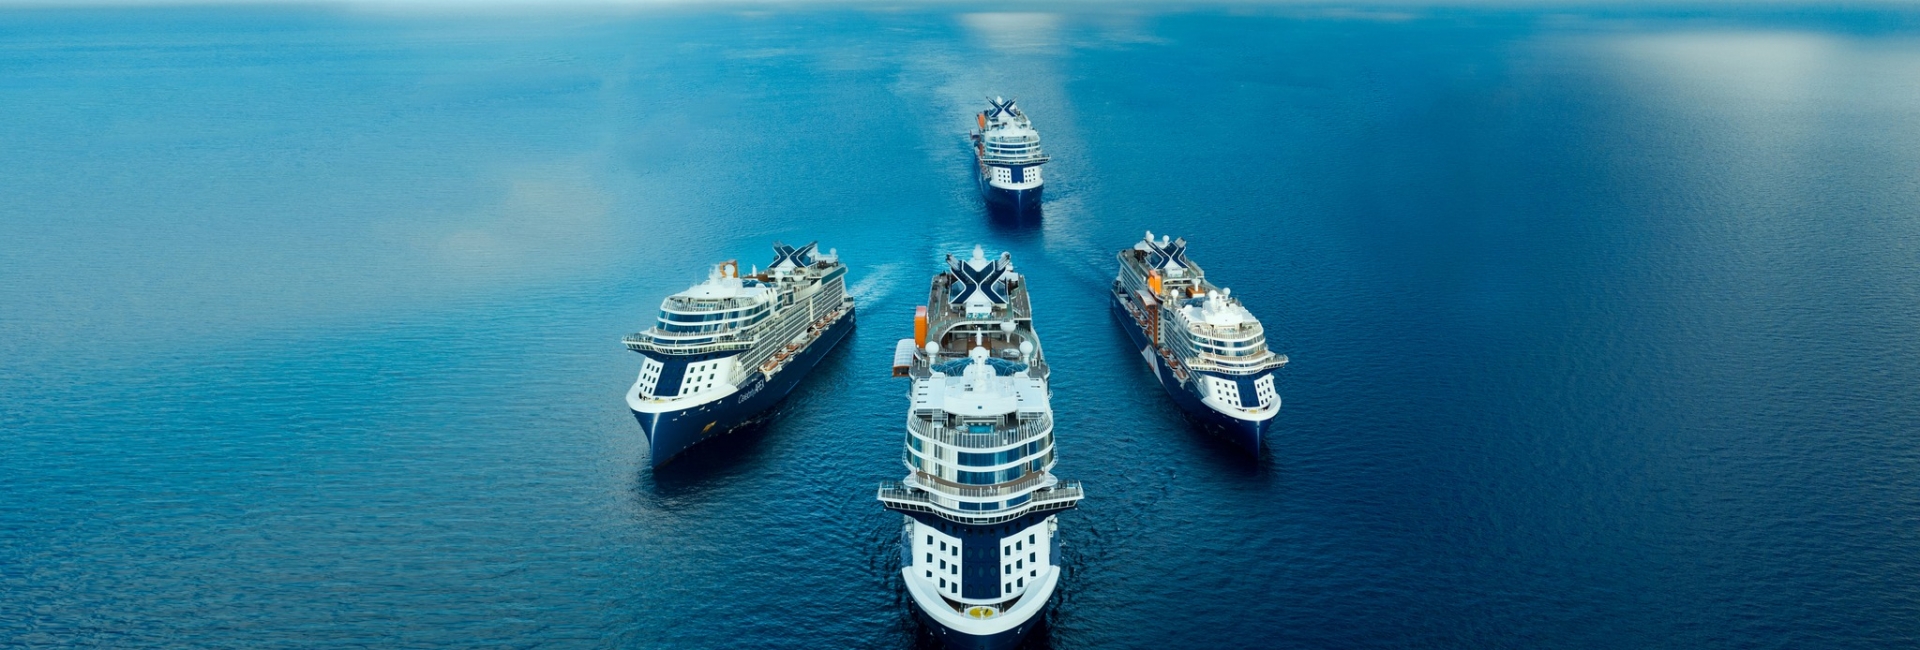 Celebrity Cruises, los resorts galardonados en el mar